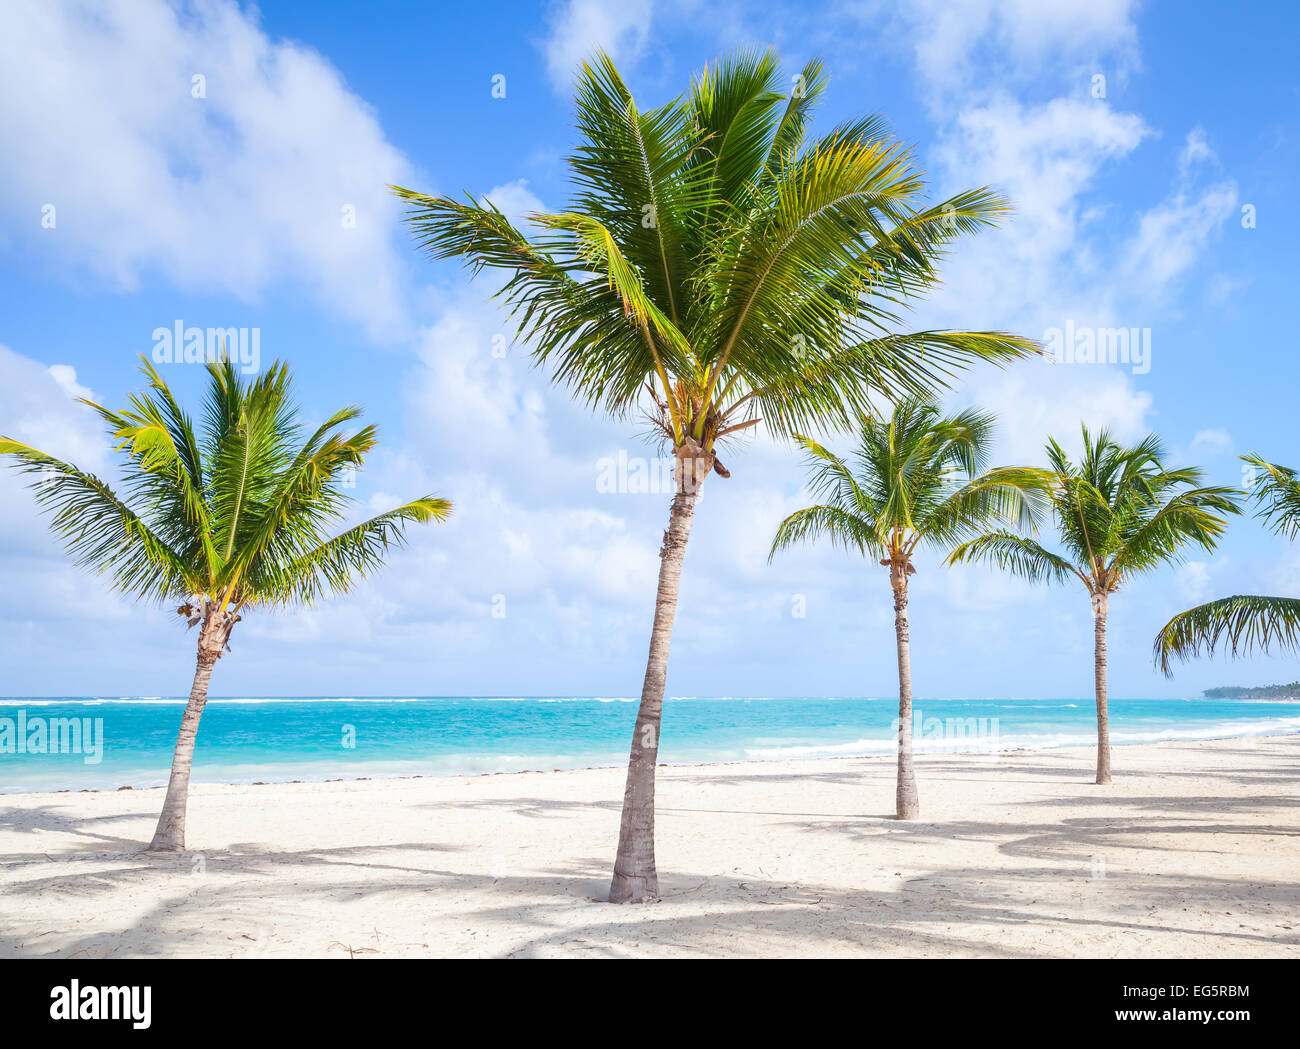 Las palmeras crecen en la playa vacía. Costa del océano Atlántico, República Dominicana Foto de stock